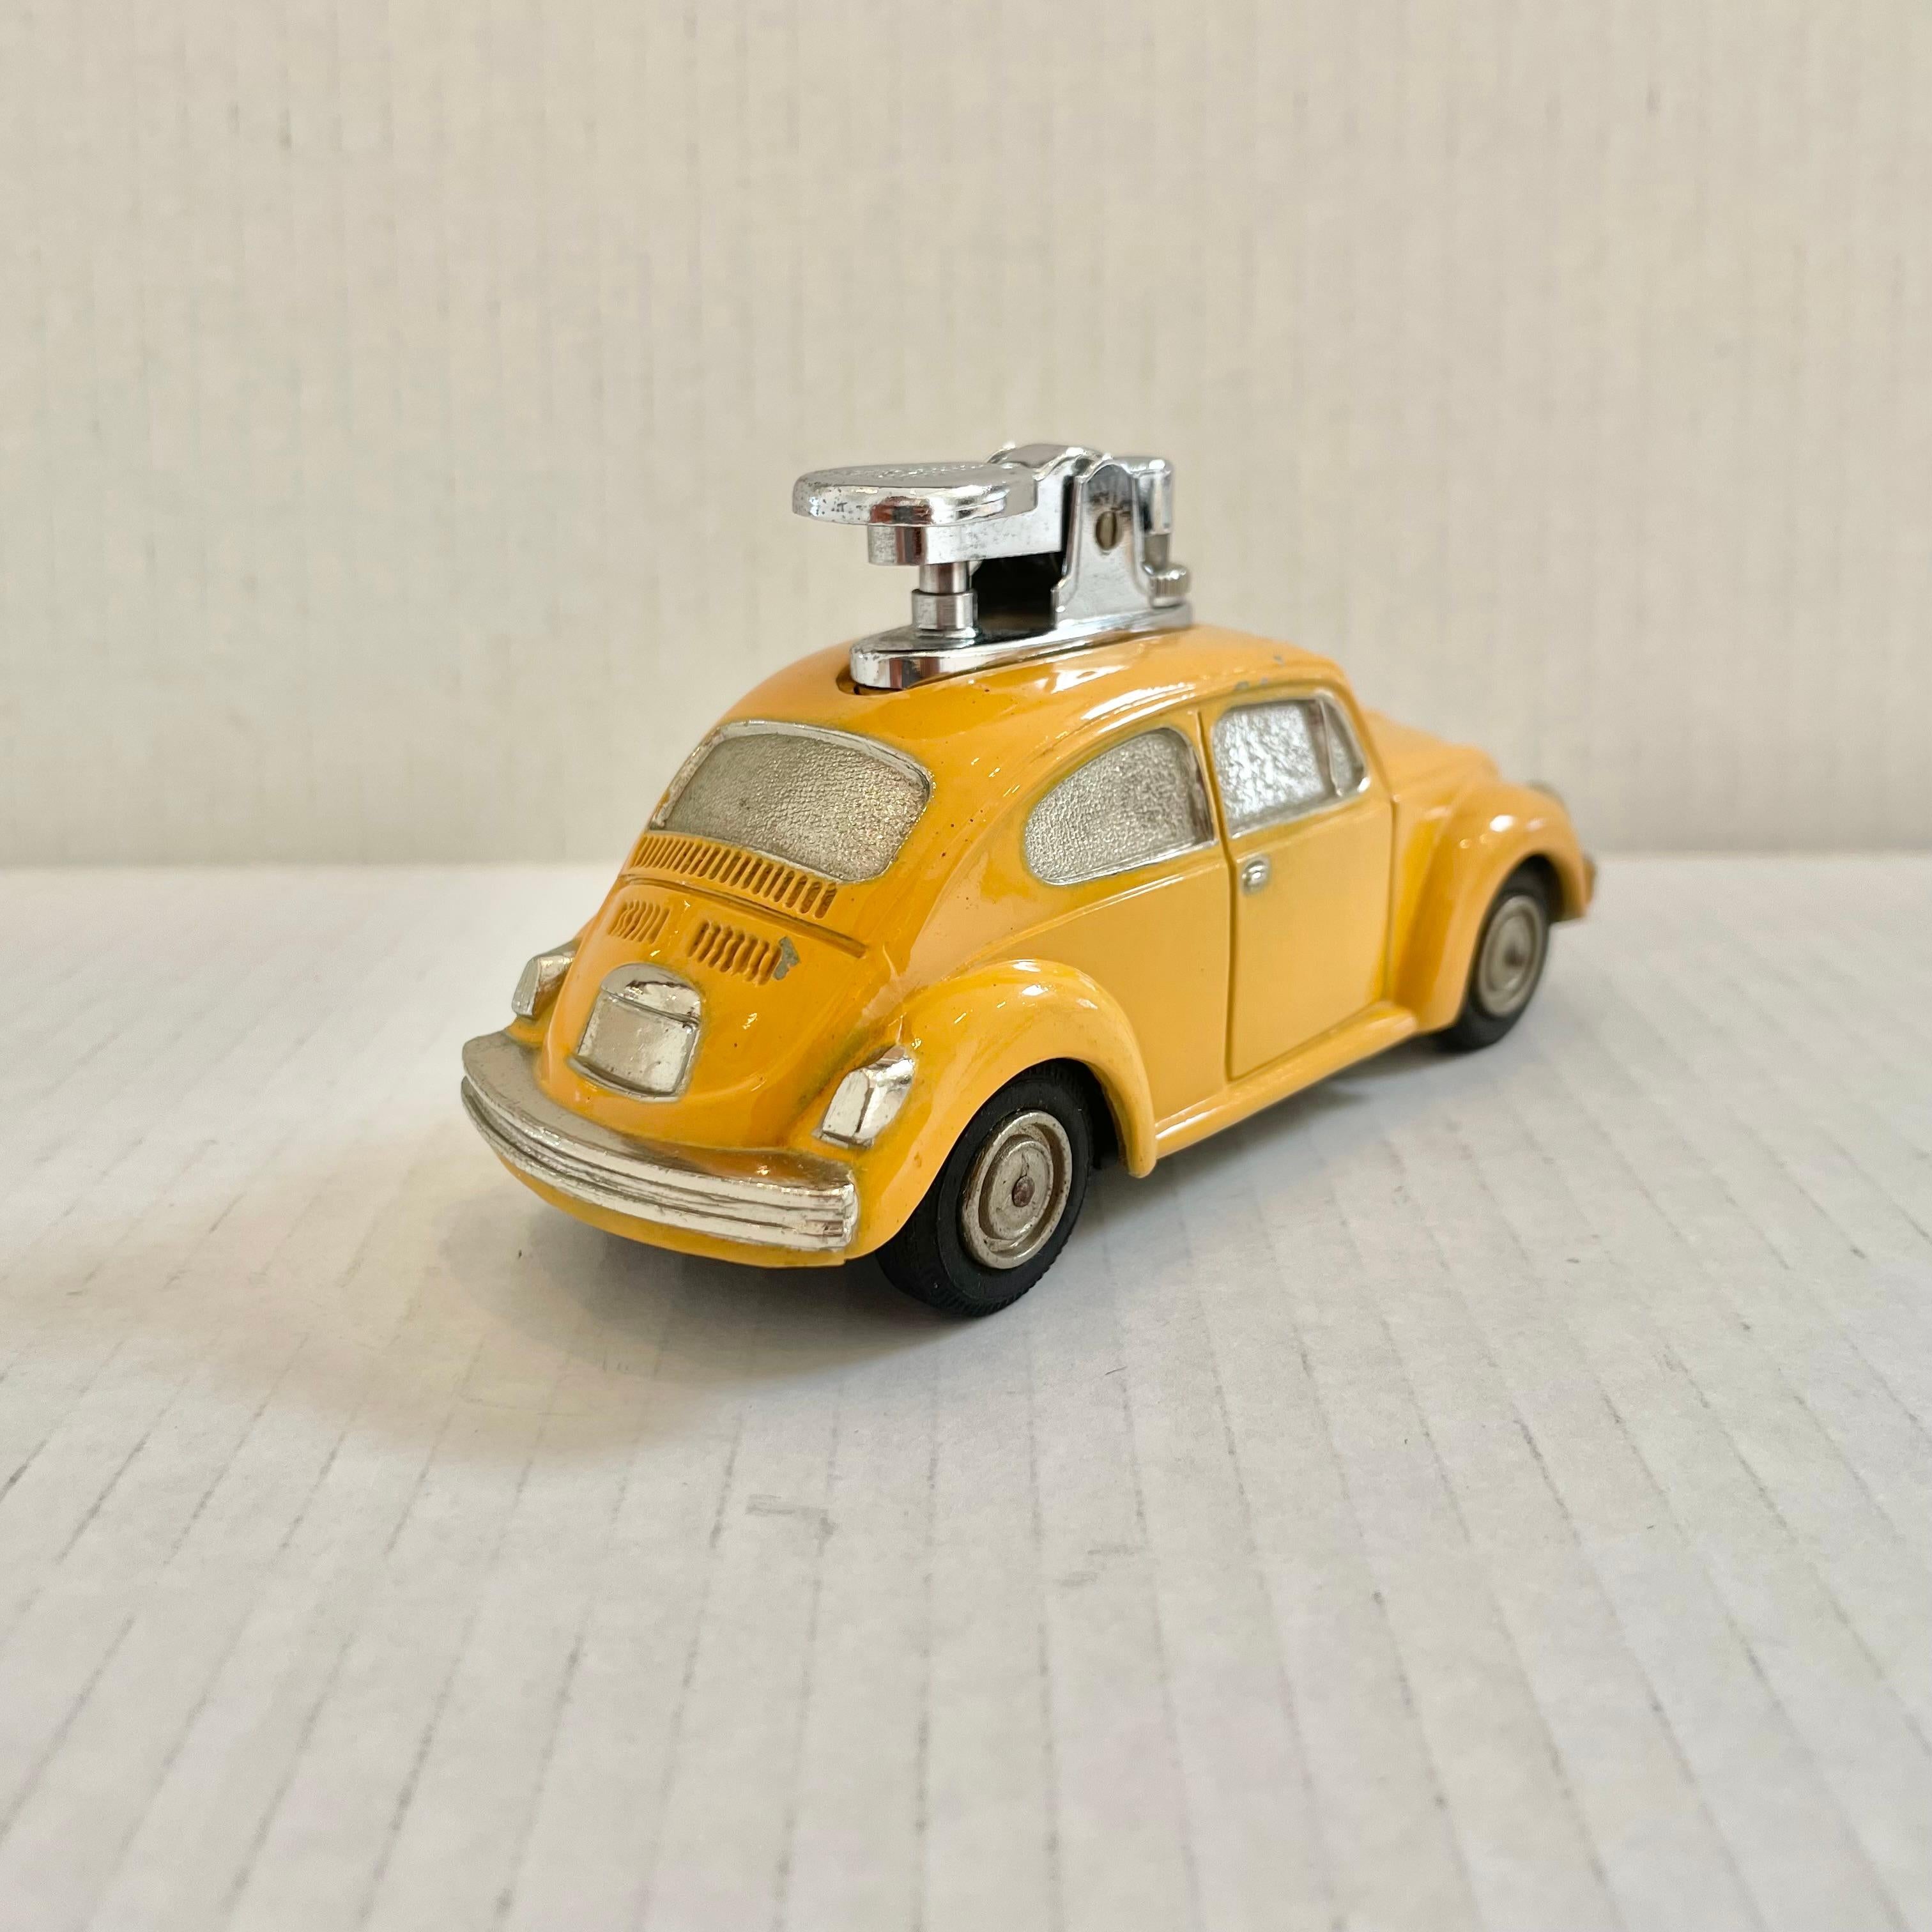 Lustiges Vintage-Tischfeuerzeug in Form eines Volkswagen Käfers. Ganz aus Metall, mit hohlem Körper und in klassischem Taxi-Gelb lackiert. Tolle Details in allen Bereichen und dünne Gummireifen als Abschluss. Ein cooles Accessoire für den